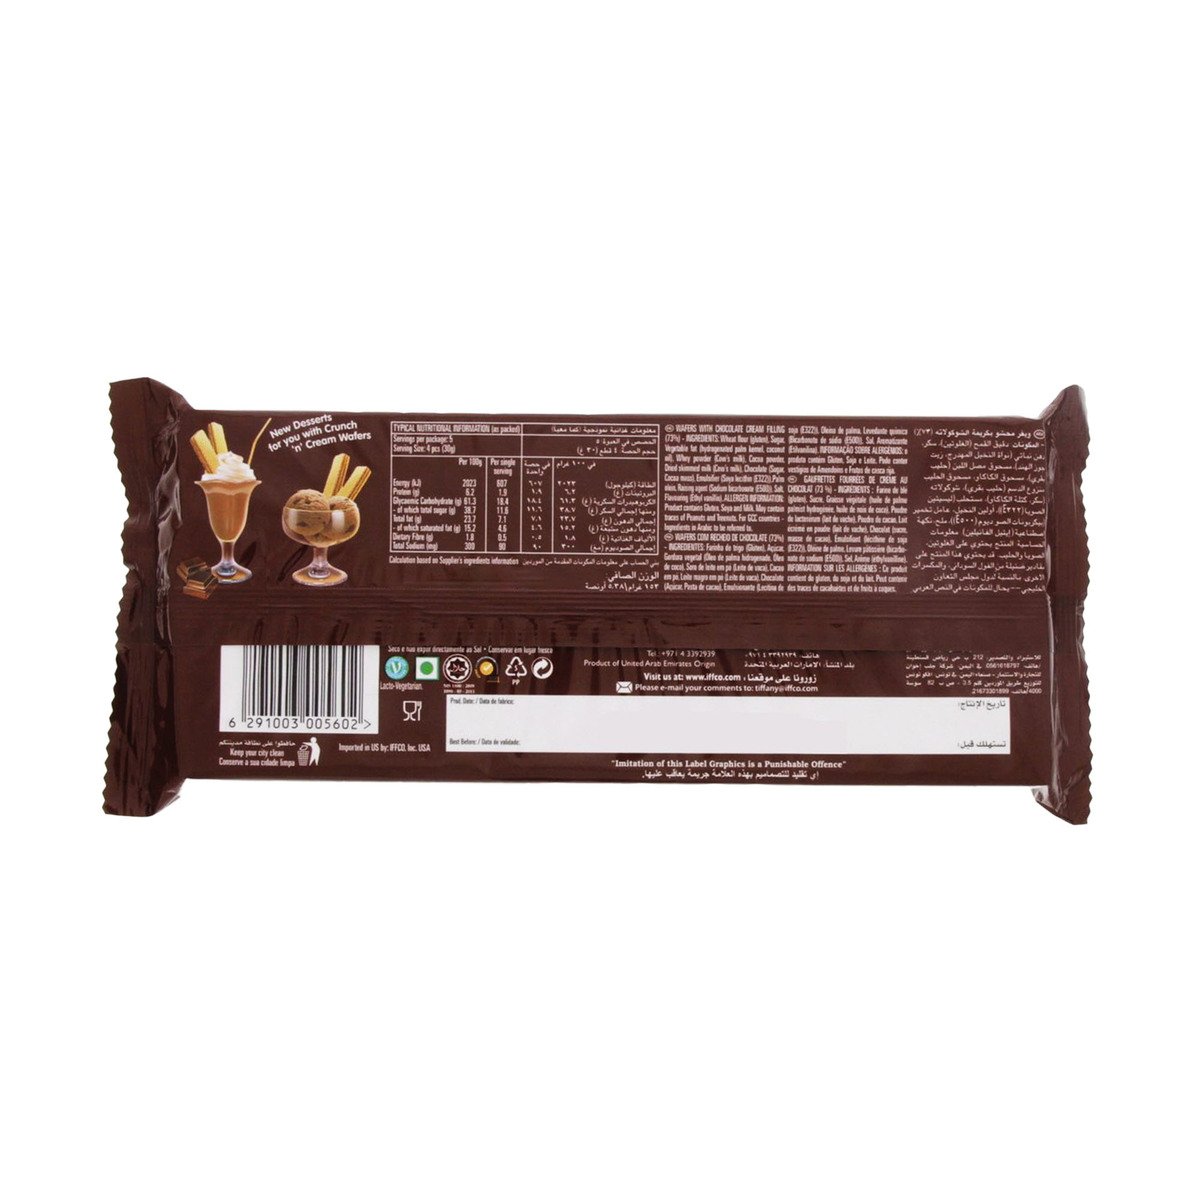 Tiffany Crunch 'n' Cream Chocolate Cream Wafers 135 g